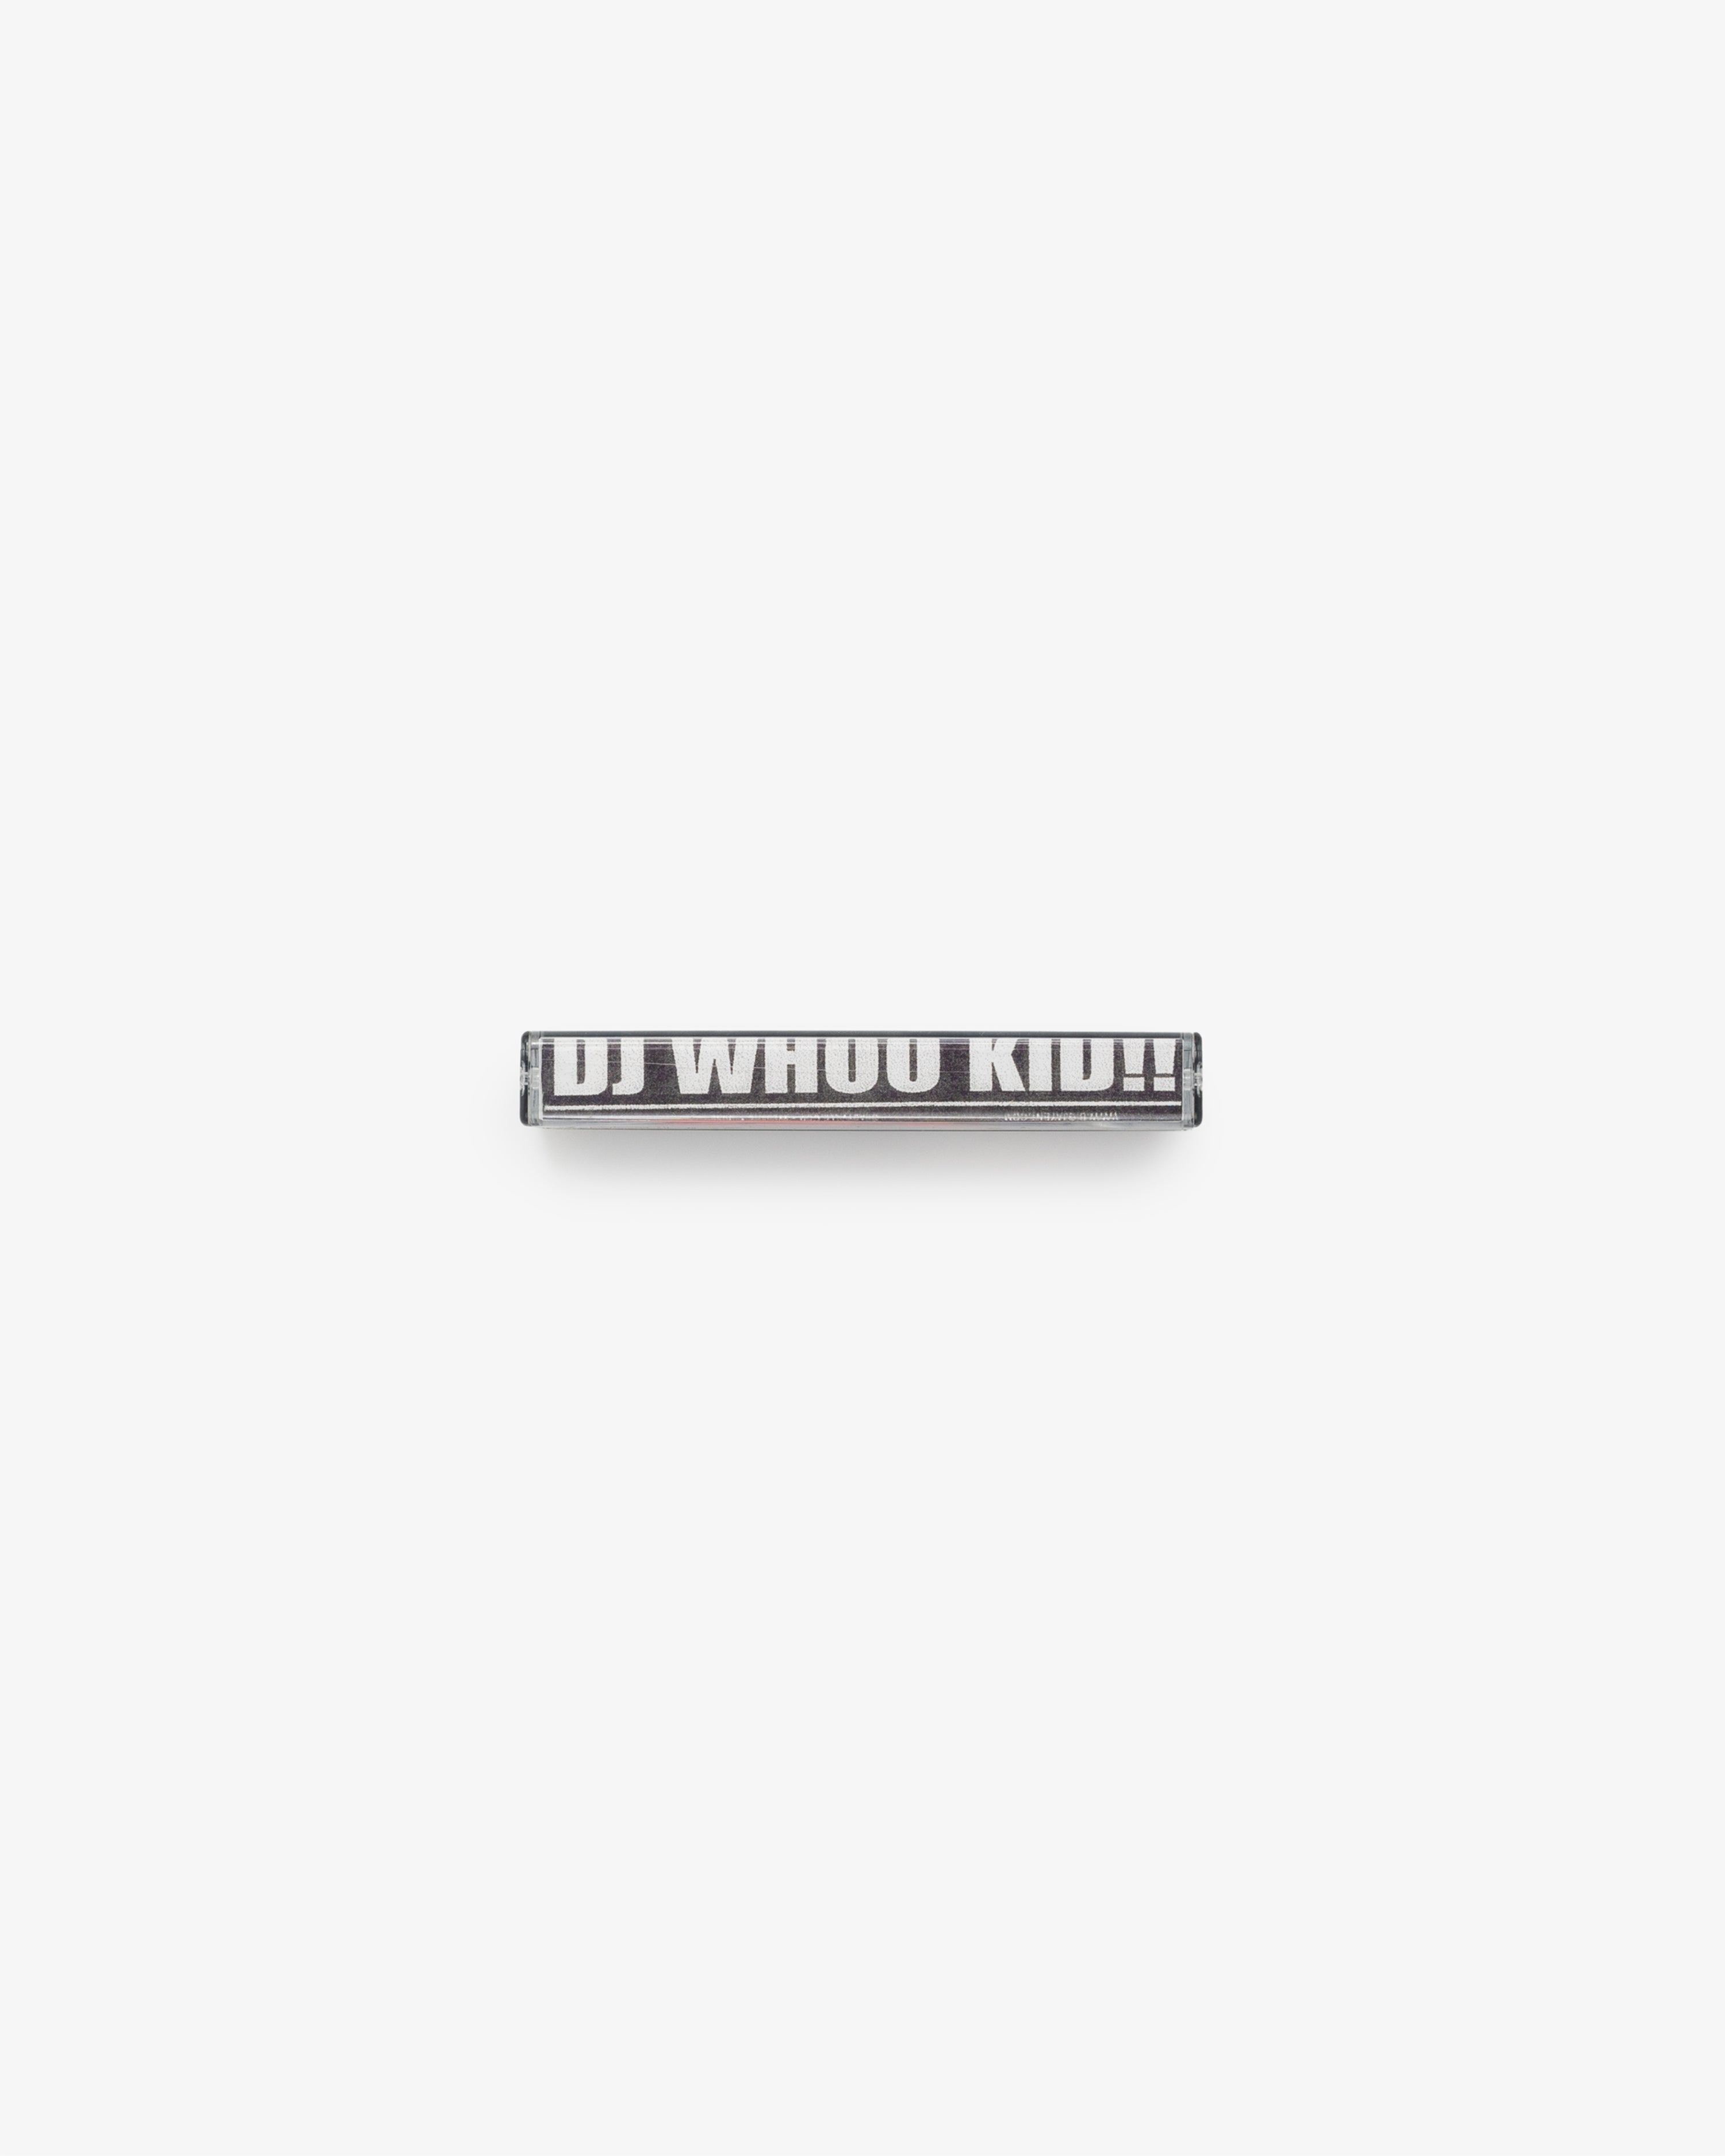 DJ Whoo Kid – Shadyville Tape